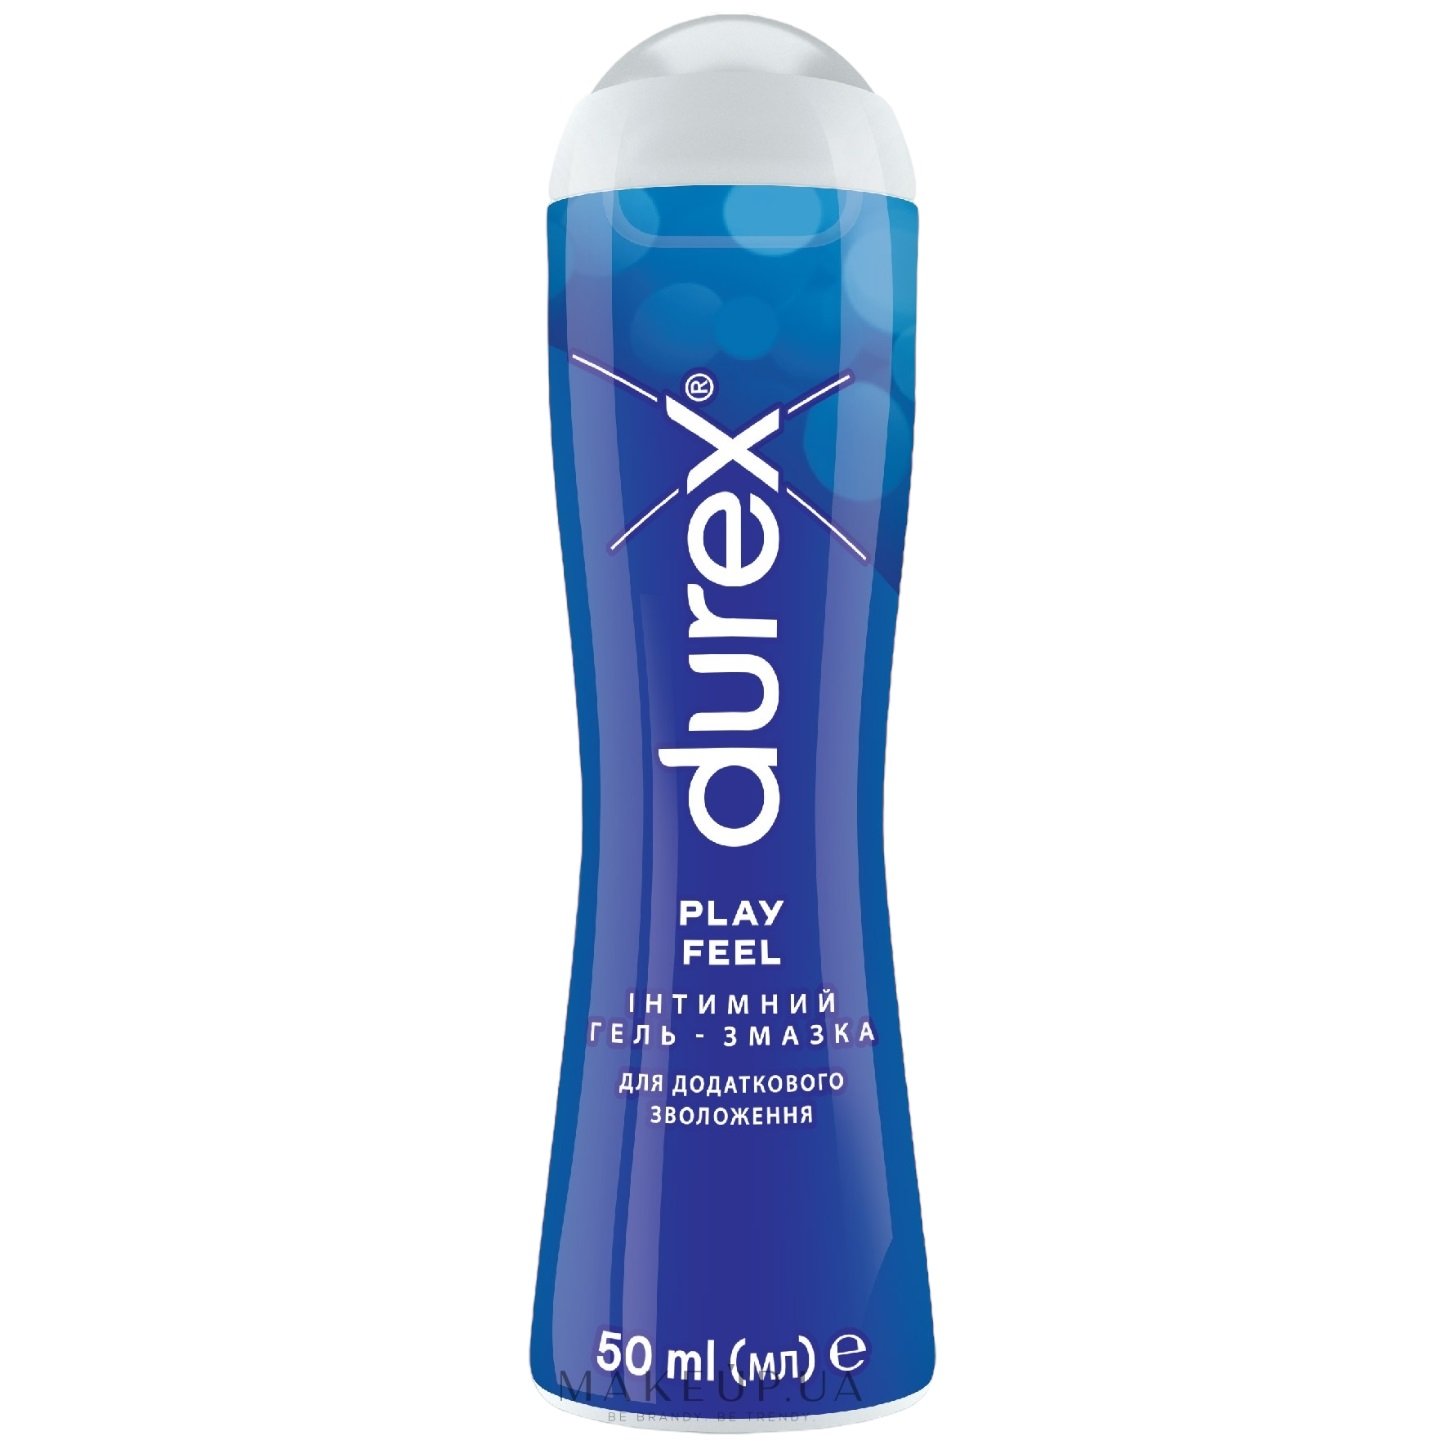 Интимный гель-смазка Durex Play Feel для дополнительного увлажнения (лубрикант), 50 мл (3037095) - фото 1